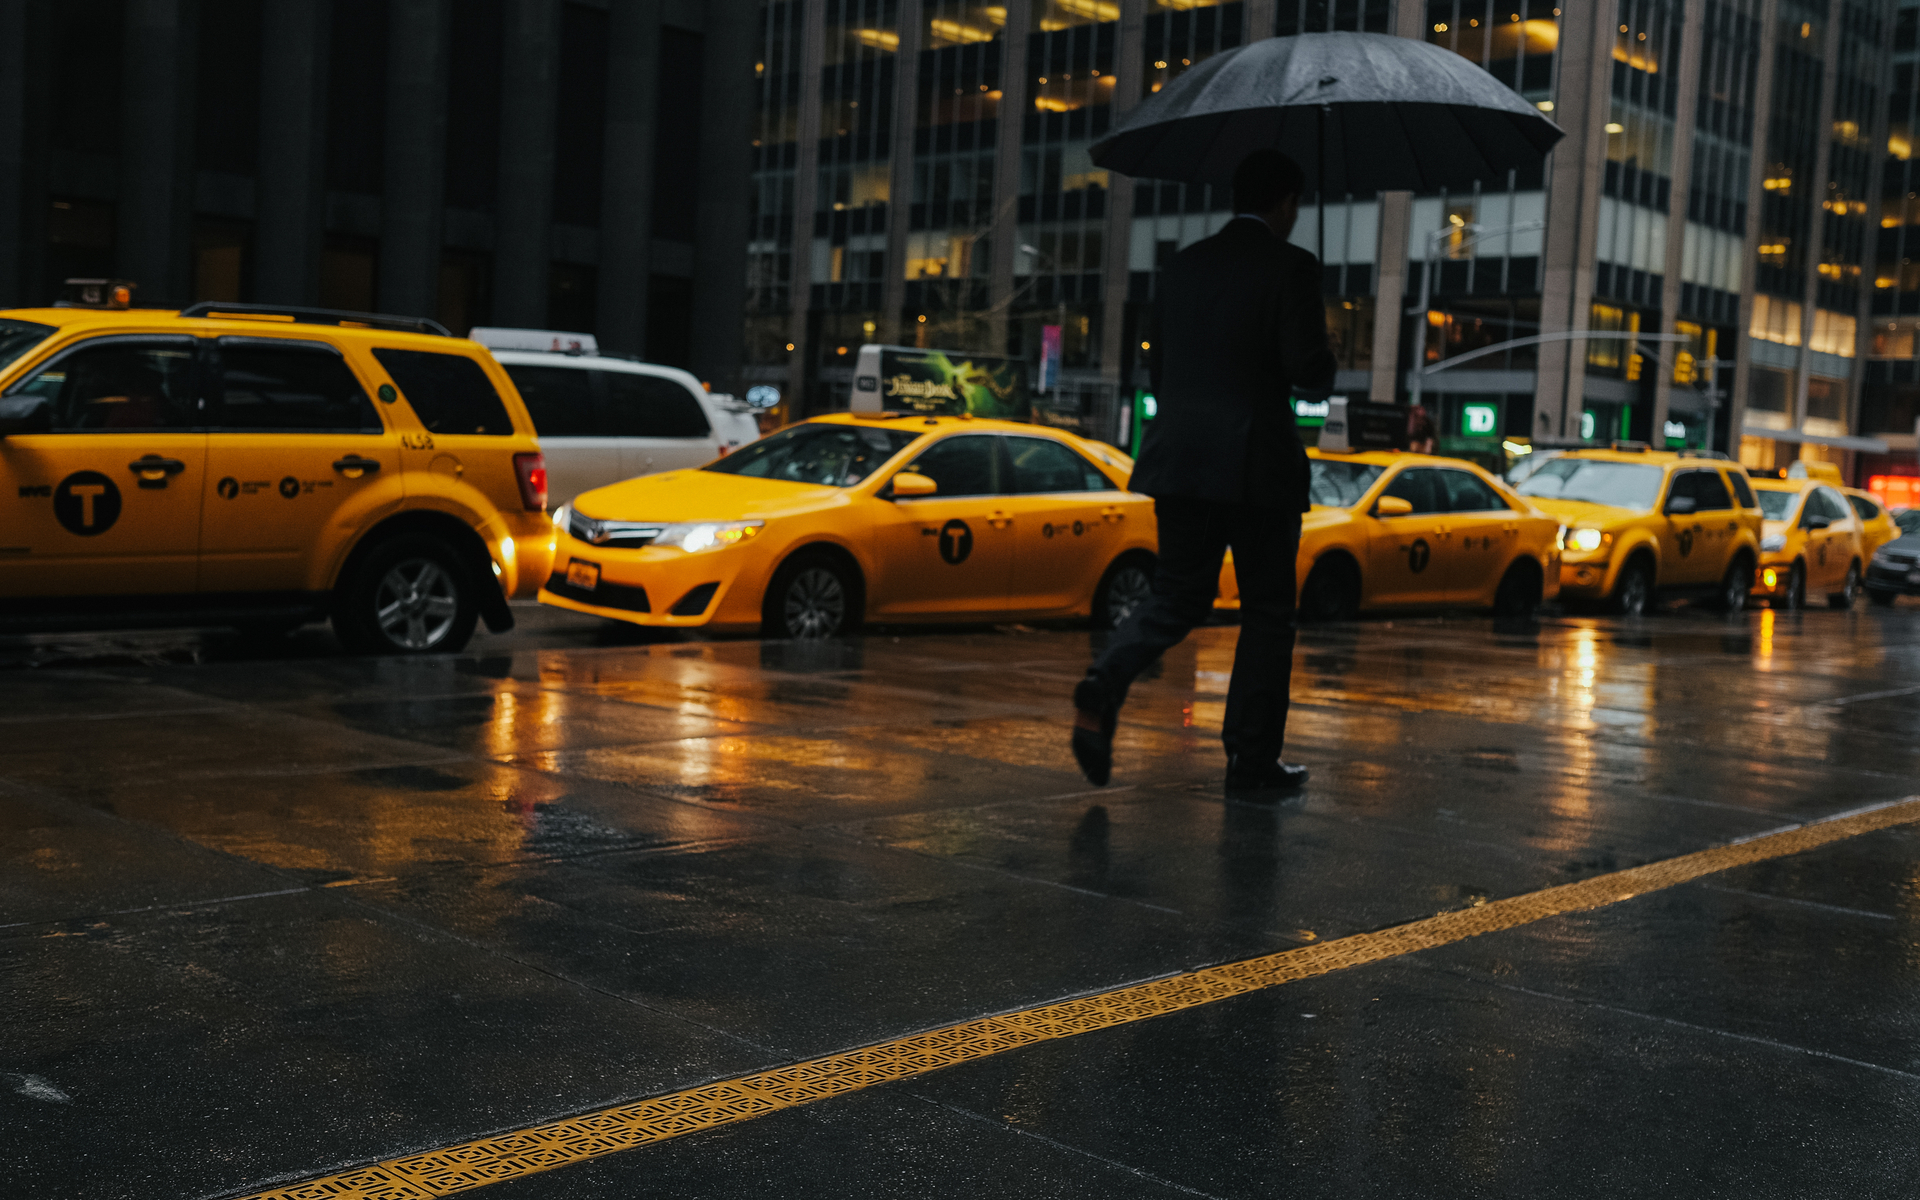 new york taxi regulations bitcoin